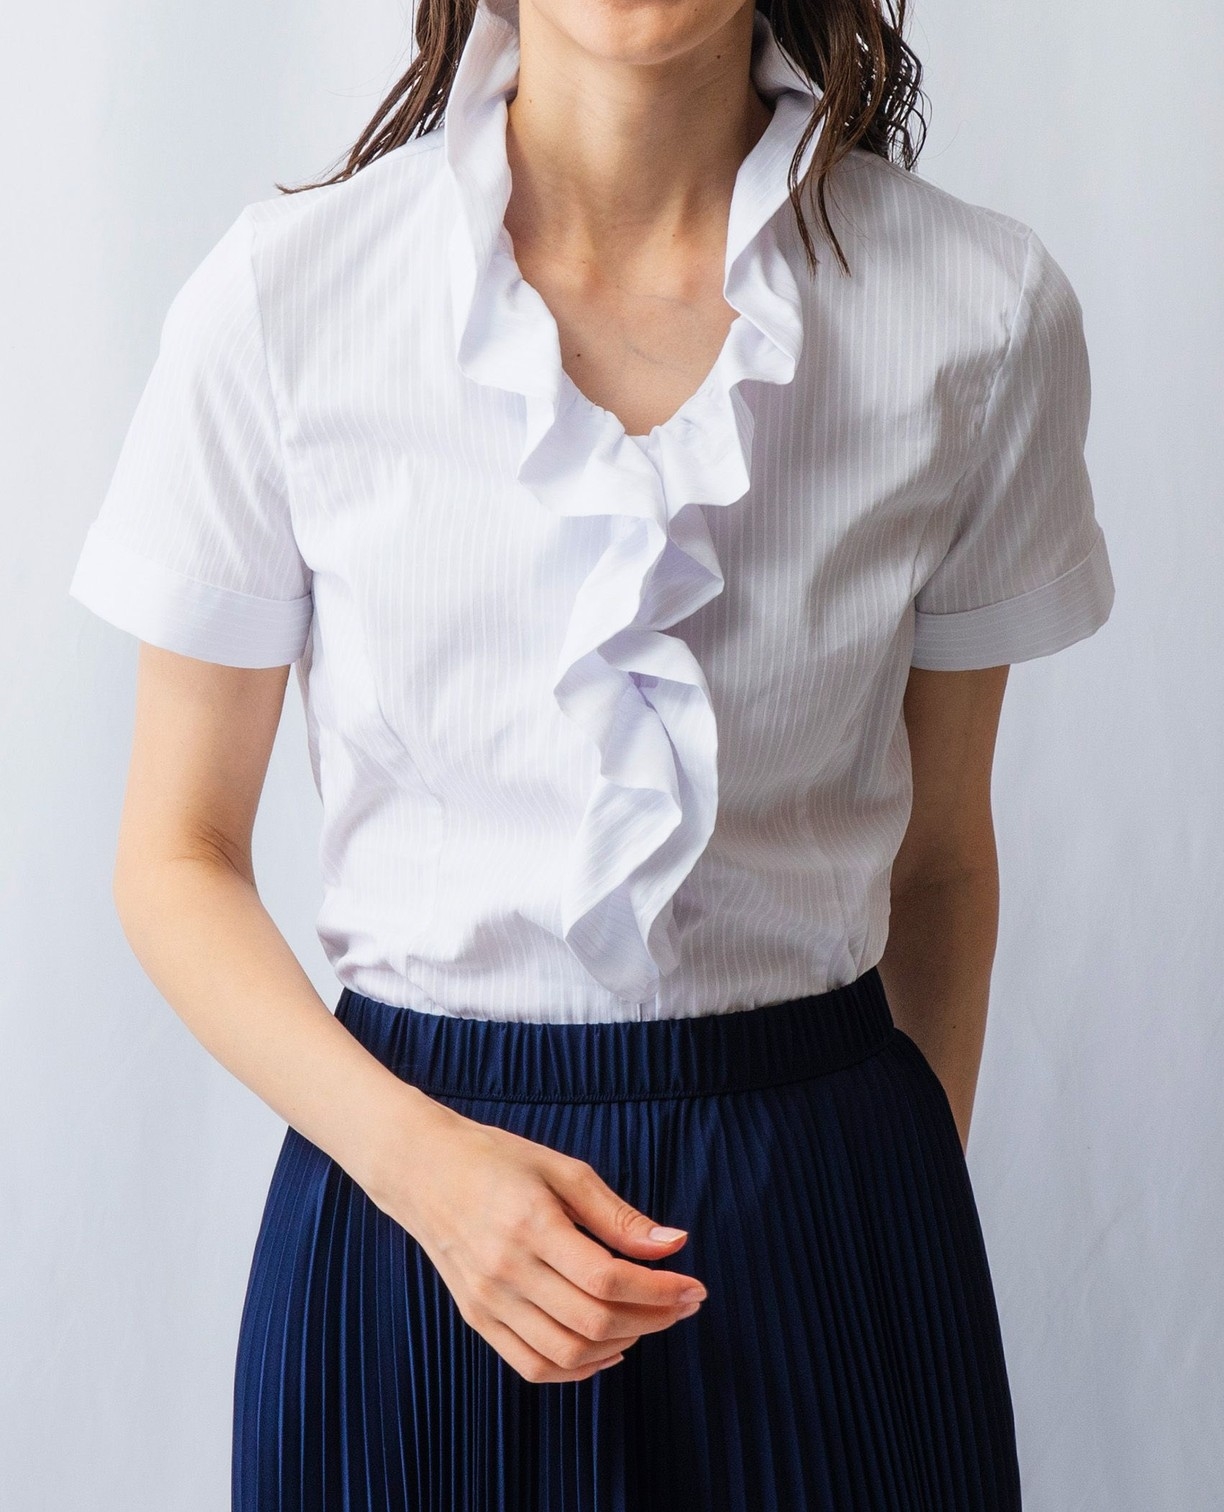 ストレッチストライプフリル衿半袖シャツ(2(L)11号 ホワイト